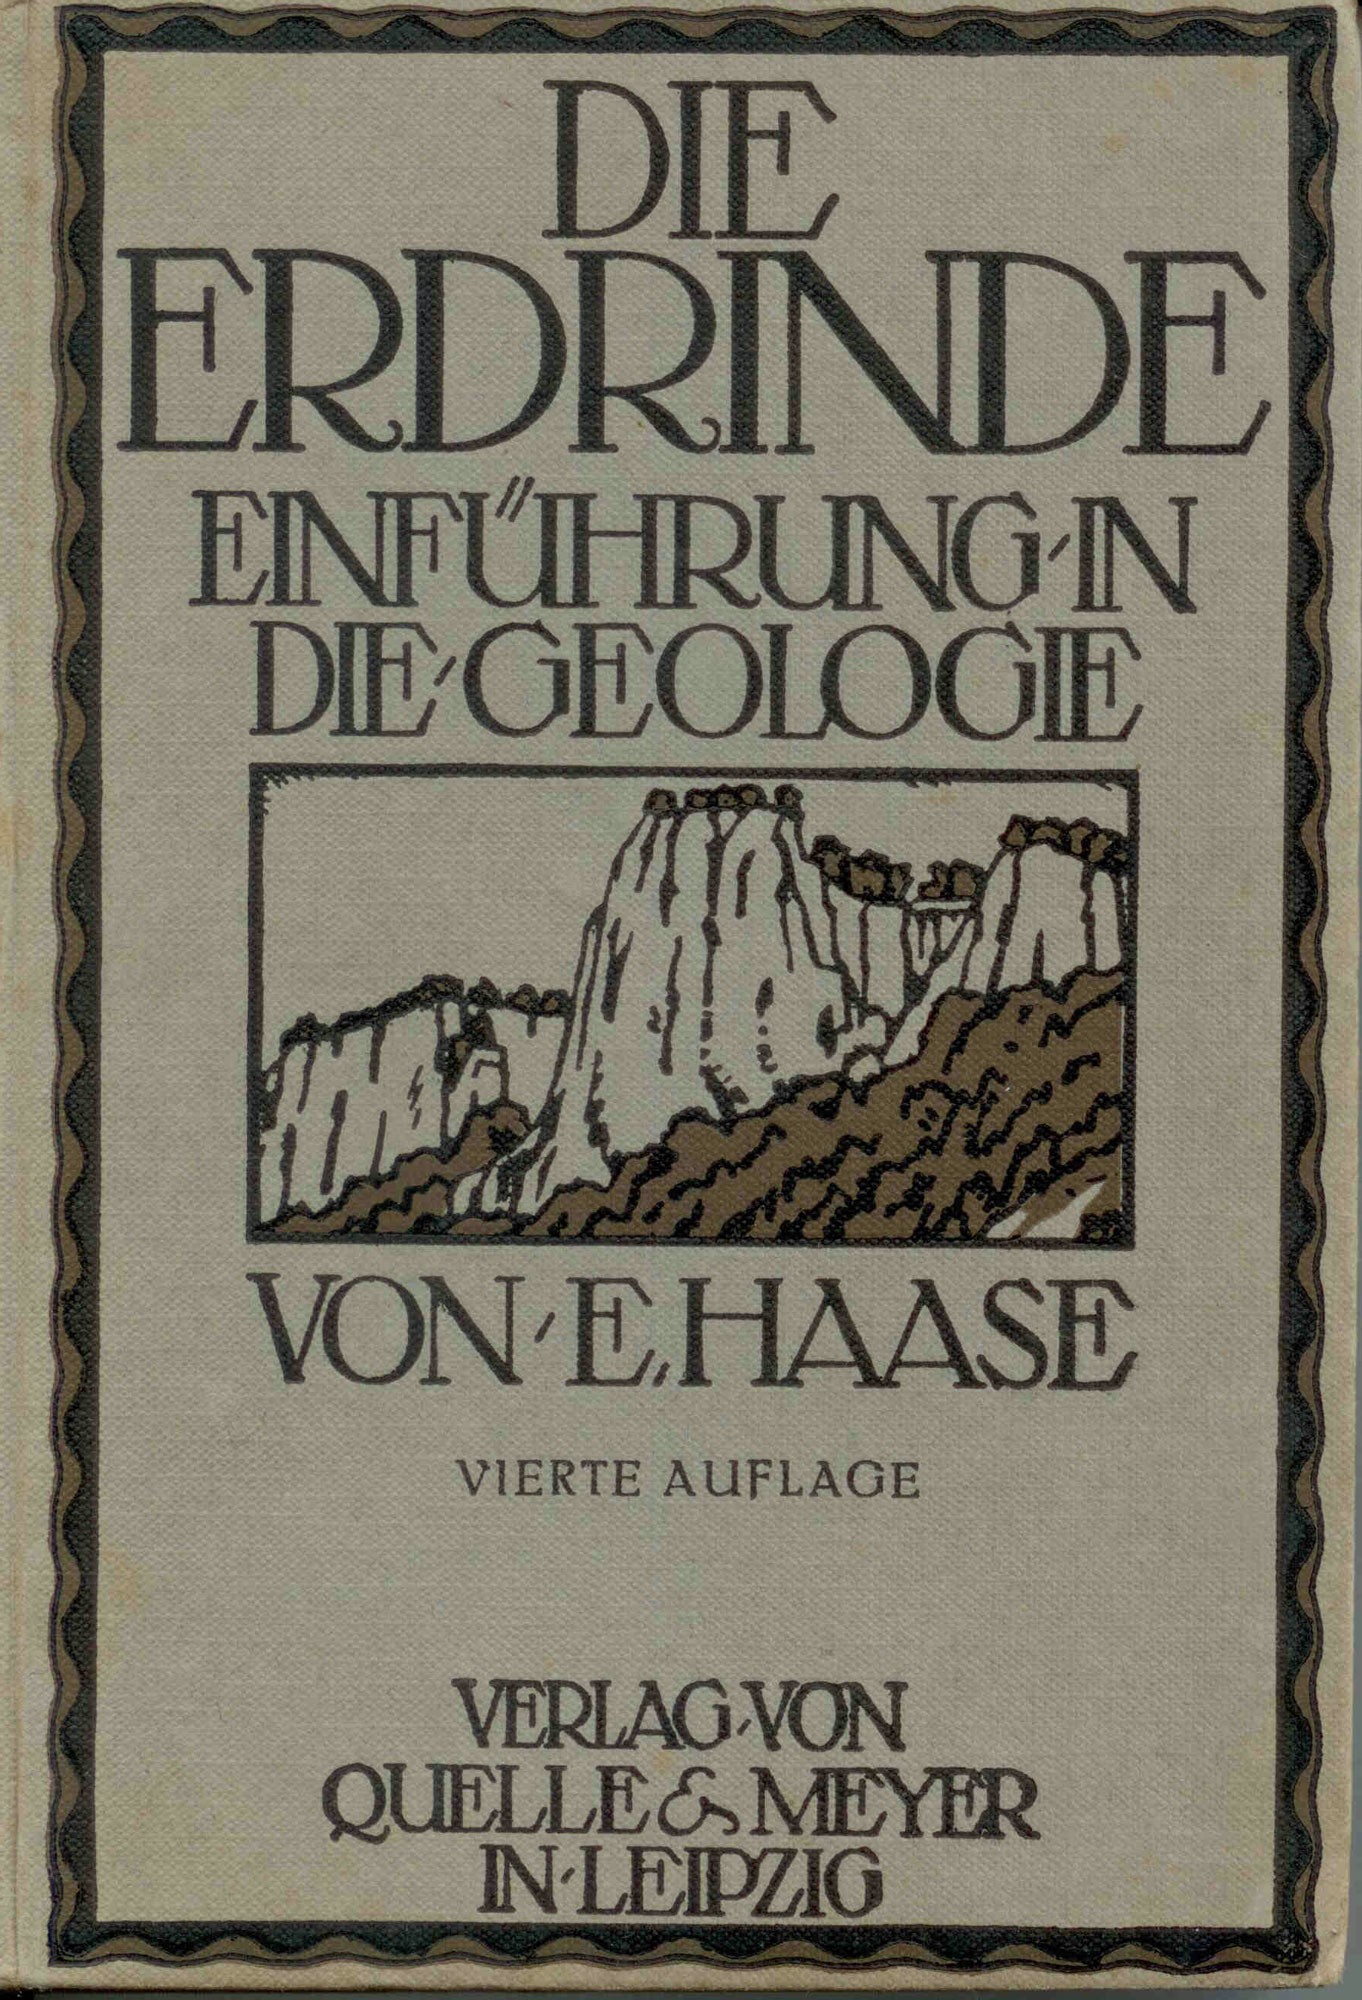 Haase, E.: Die Erdrinde. - Einführung in die Geologie.